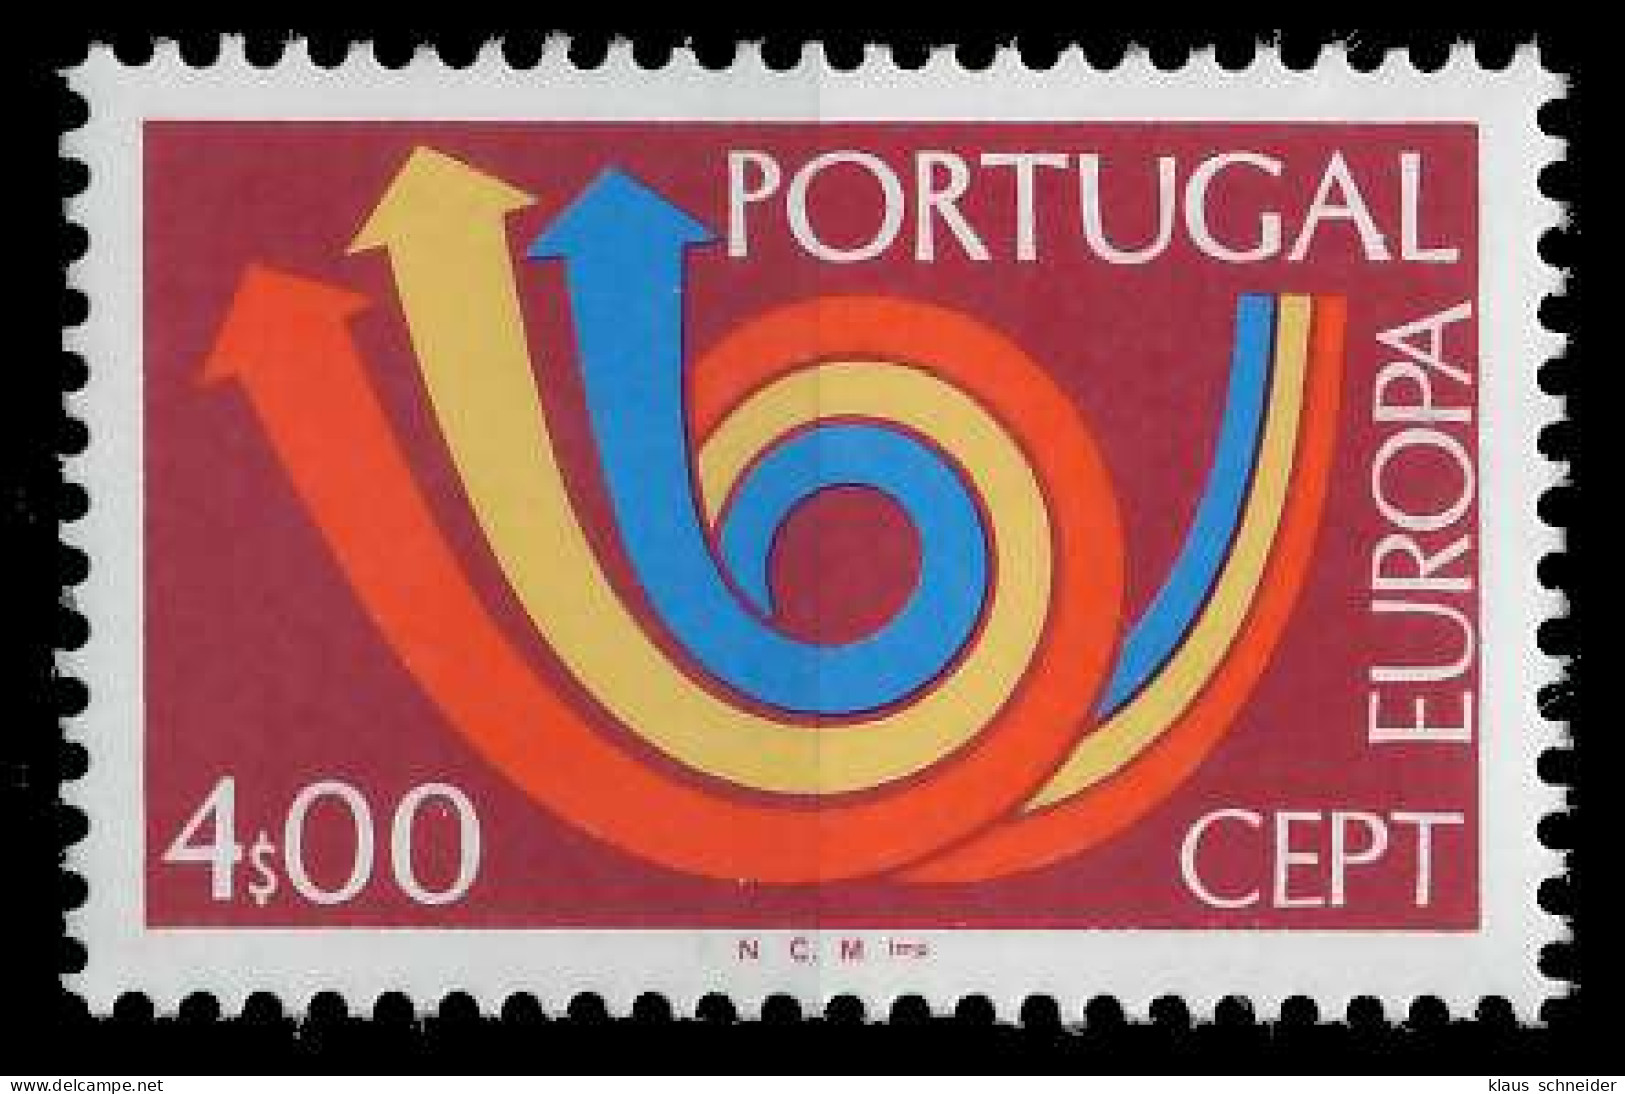 PORTUGAL 1973 Nr 1200 Postfrisch S7D9DA2 - Neufs